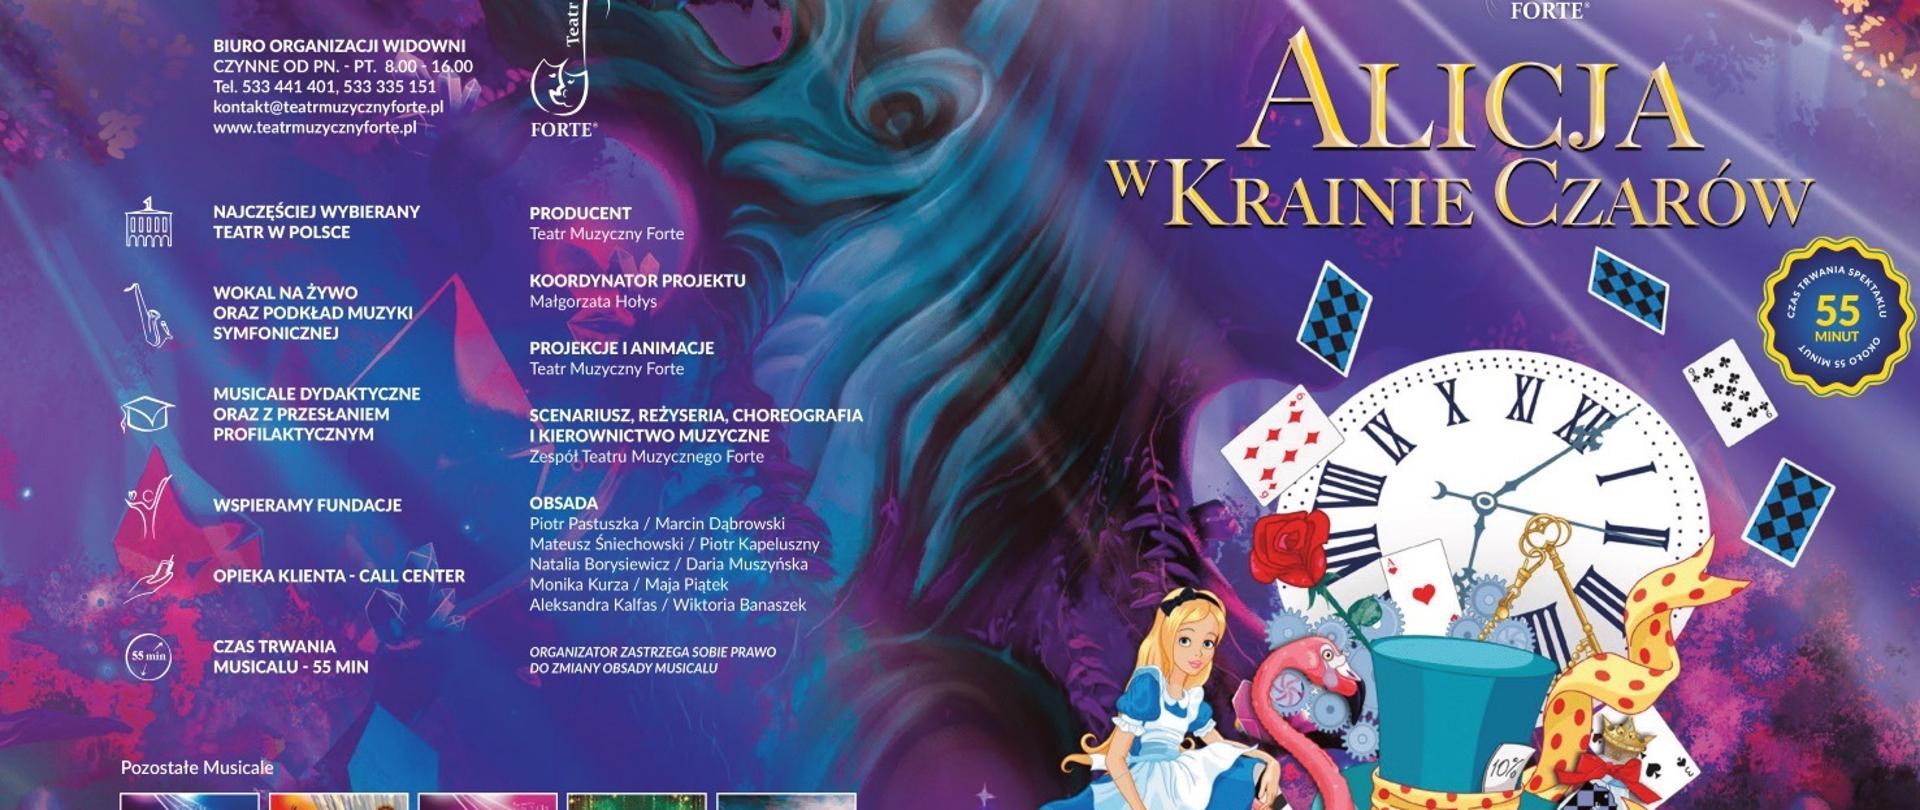 Plakat na kolorowym tle wraz z szczegółowymi informacjami dot. musicalu pt. " Alicja w Krainie Czarów " 